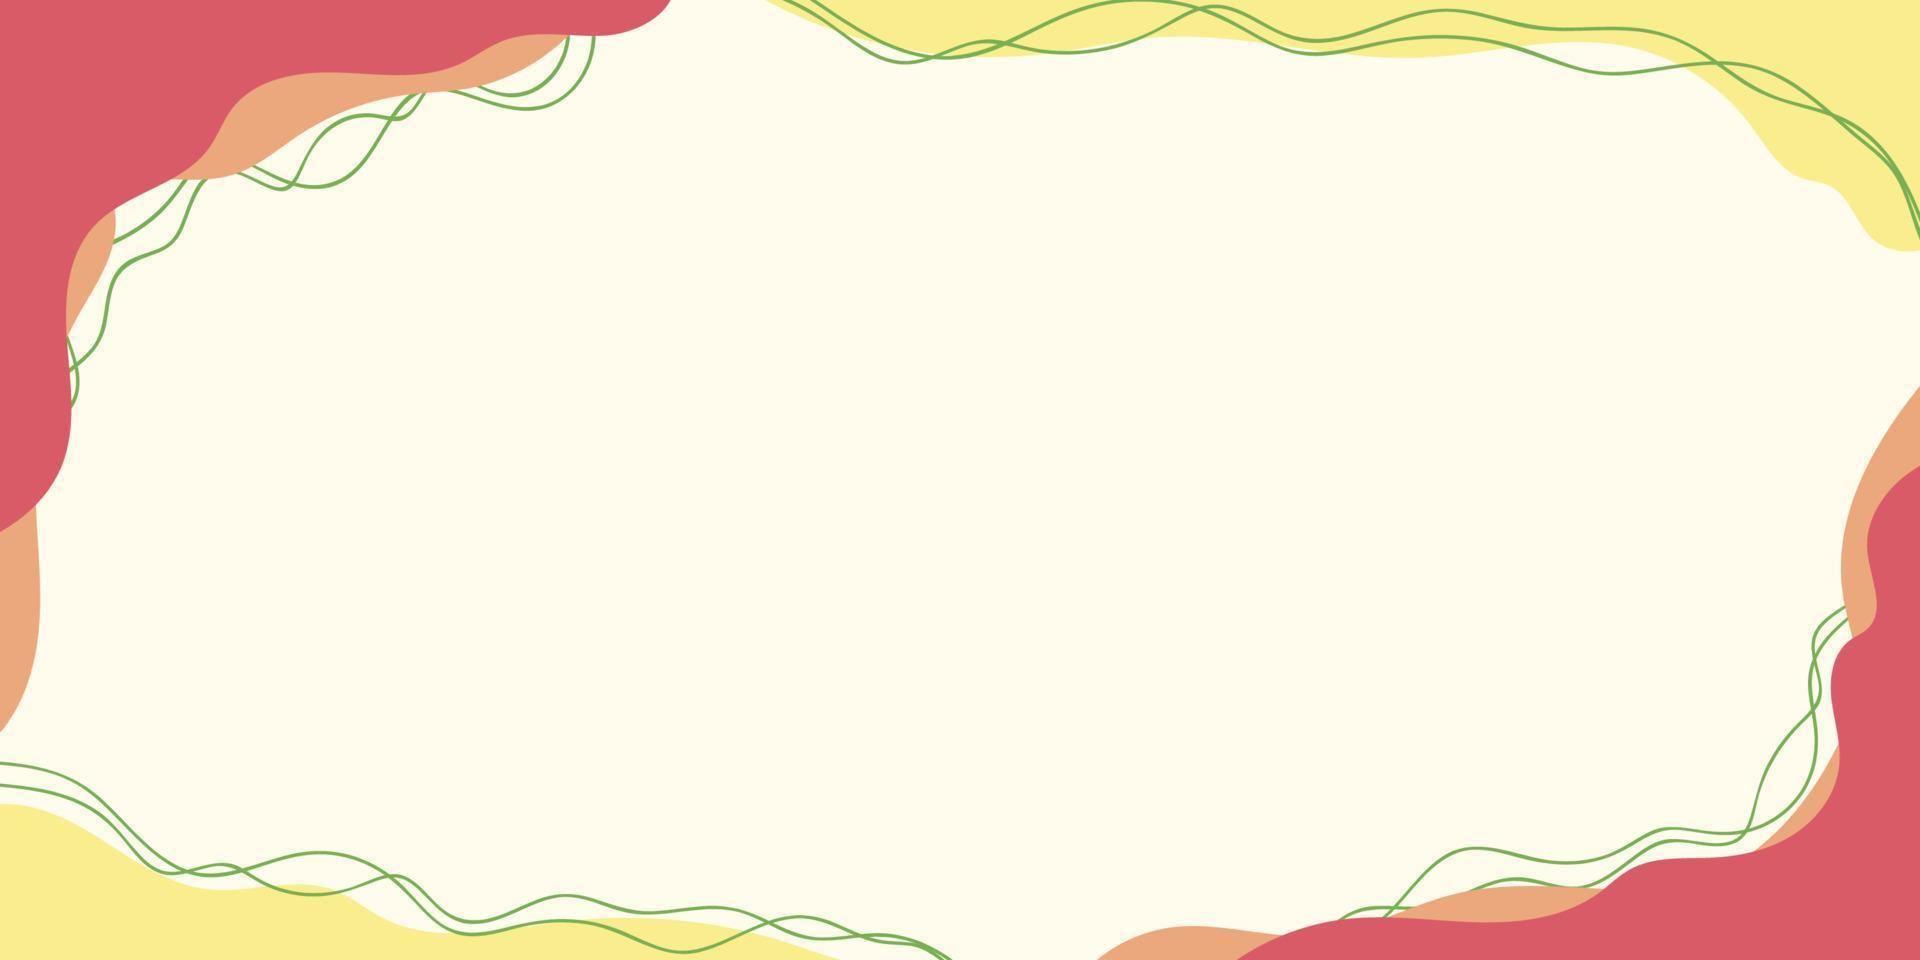 abstrakt flytande banner bakgrund med textutrymme, mjuk färg vektor. vektor